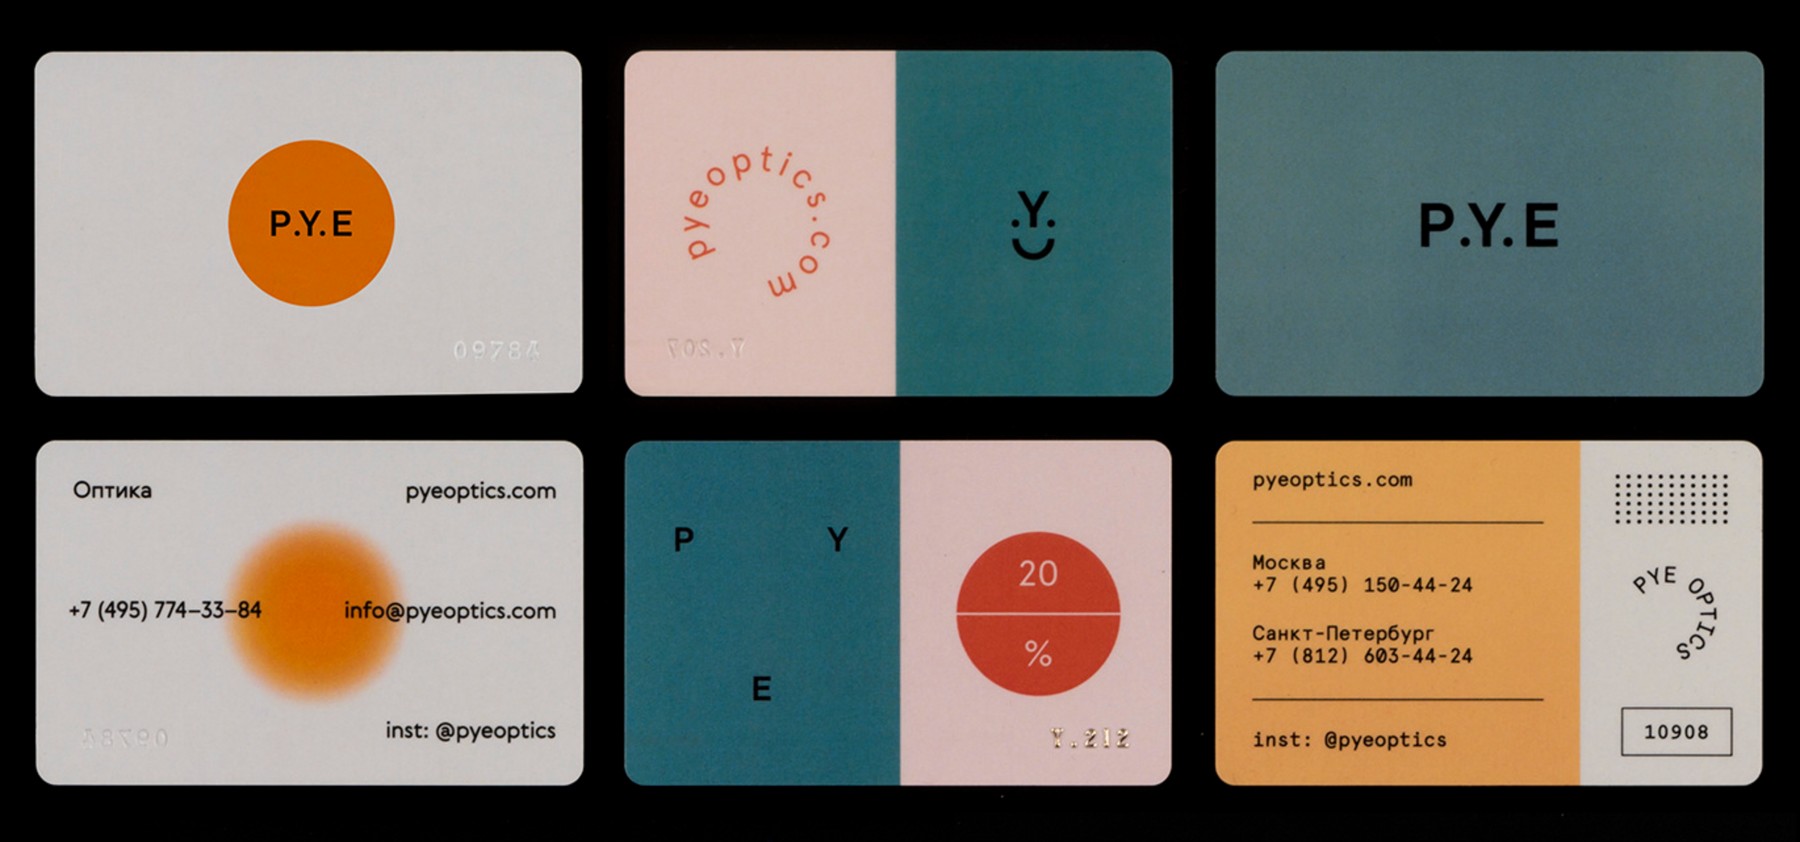 P.Y.E Cards